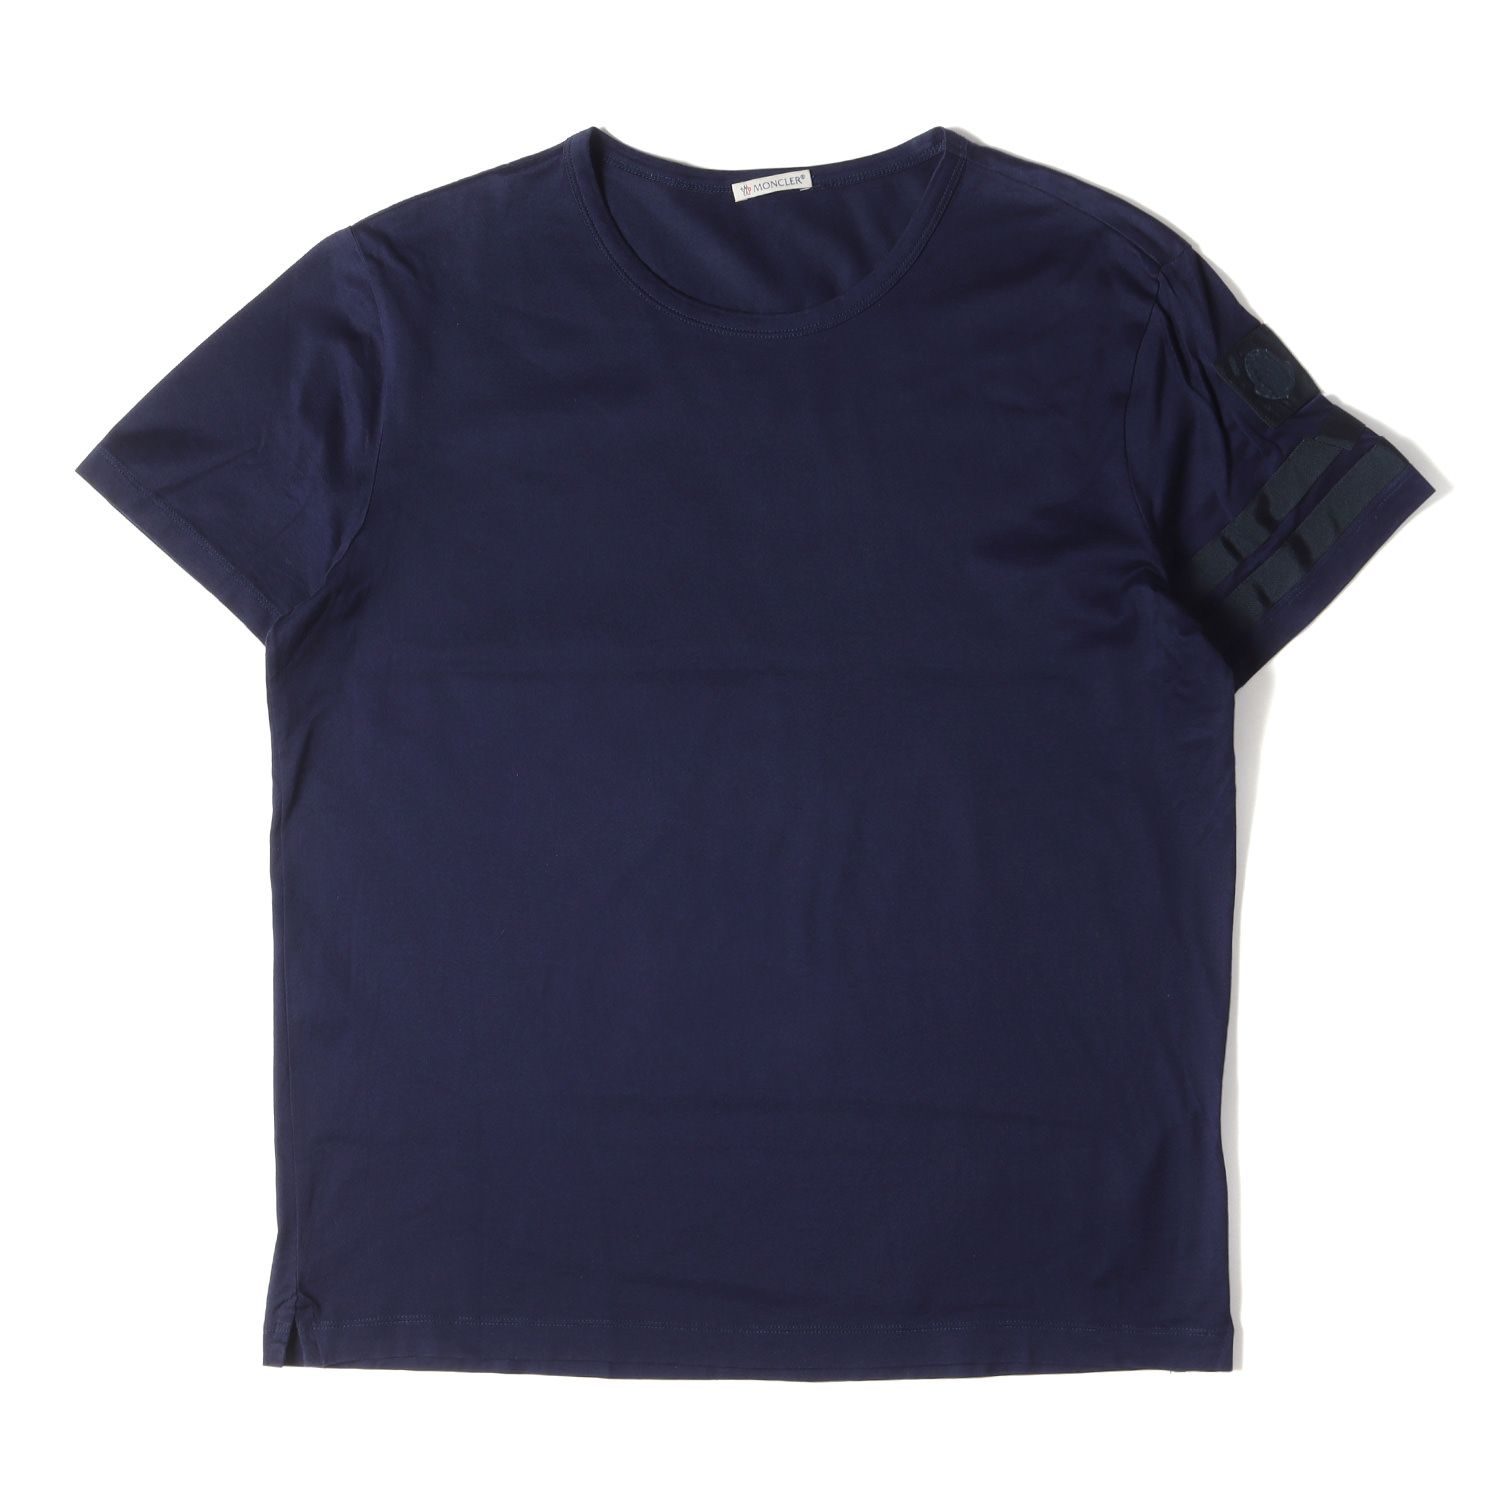 MONCLER モンクレール Tシャツ サイズ:L アームライン ロゴワッペン クルーネック 半袖 Tシャツ B10918008500 ネイビー 紺  カットソー トップス ブランド シンプル プレーン 無地